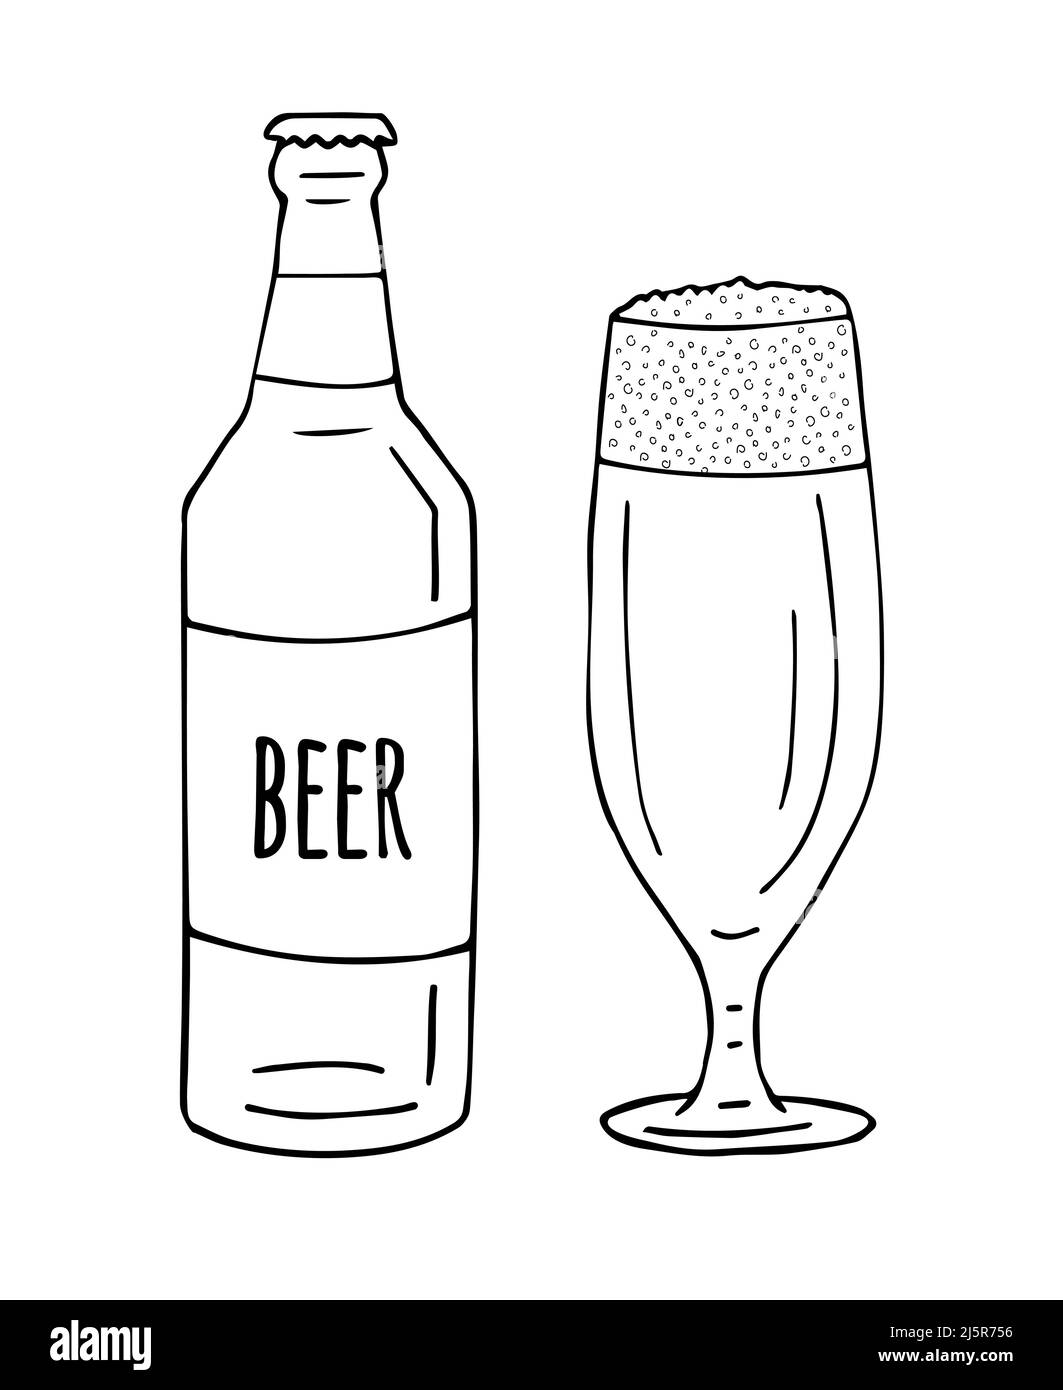 Bouteille et verre à bière dessin à la main Vector isolé sur fond blanc  Image Vectorielle Stock - Alamy